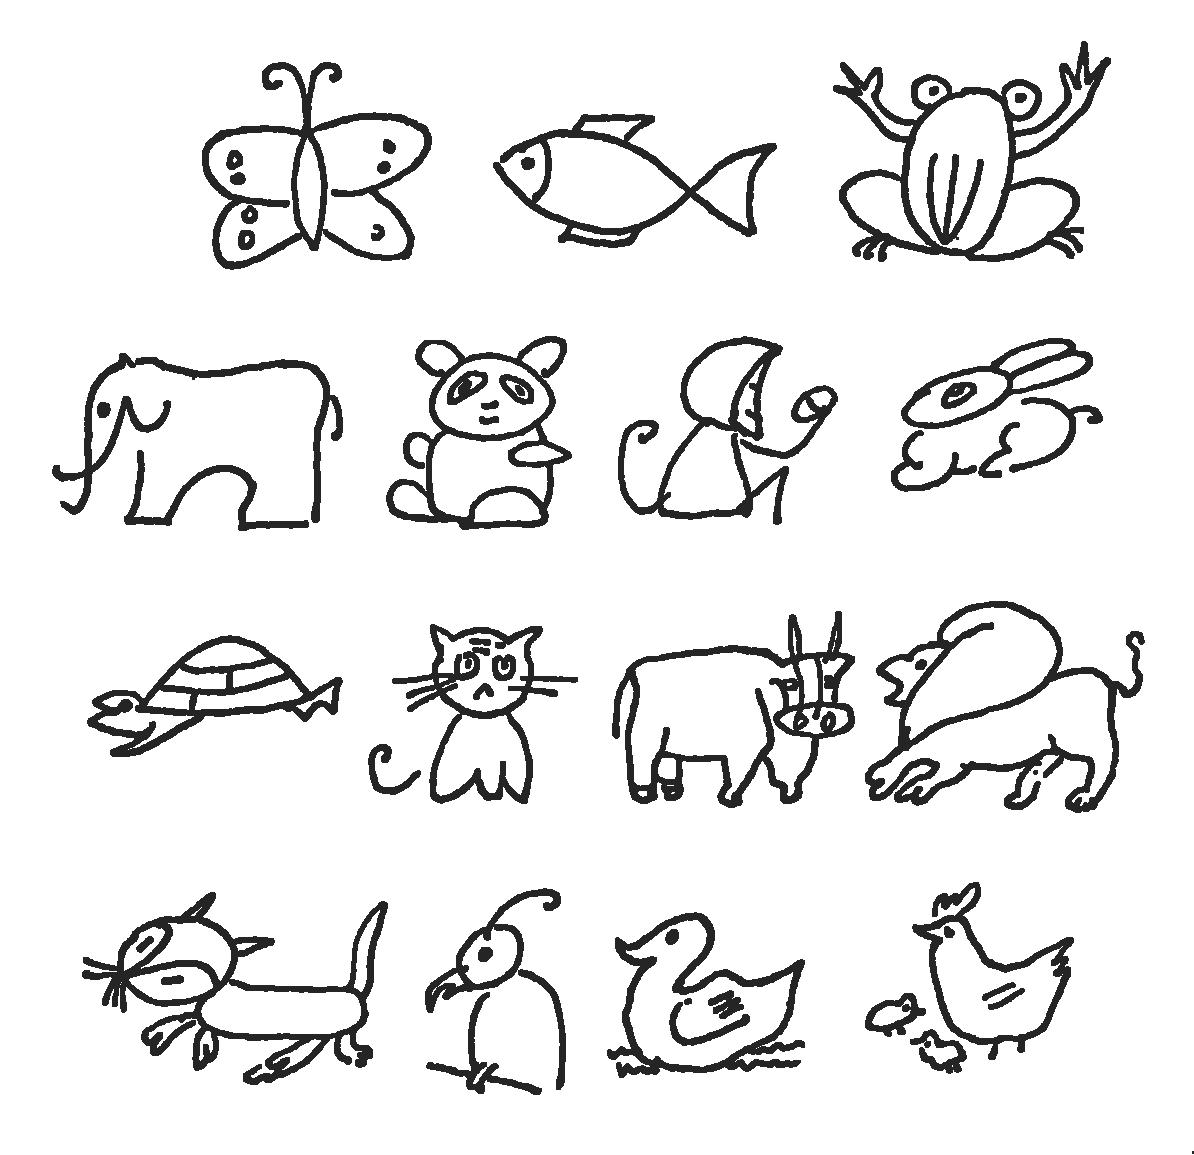 简笔画动物大全简单 画小动物的简笔画